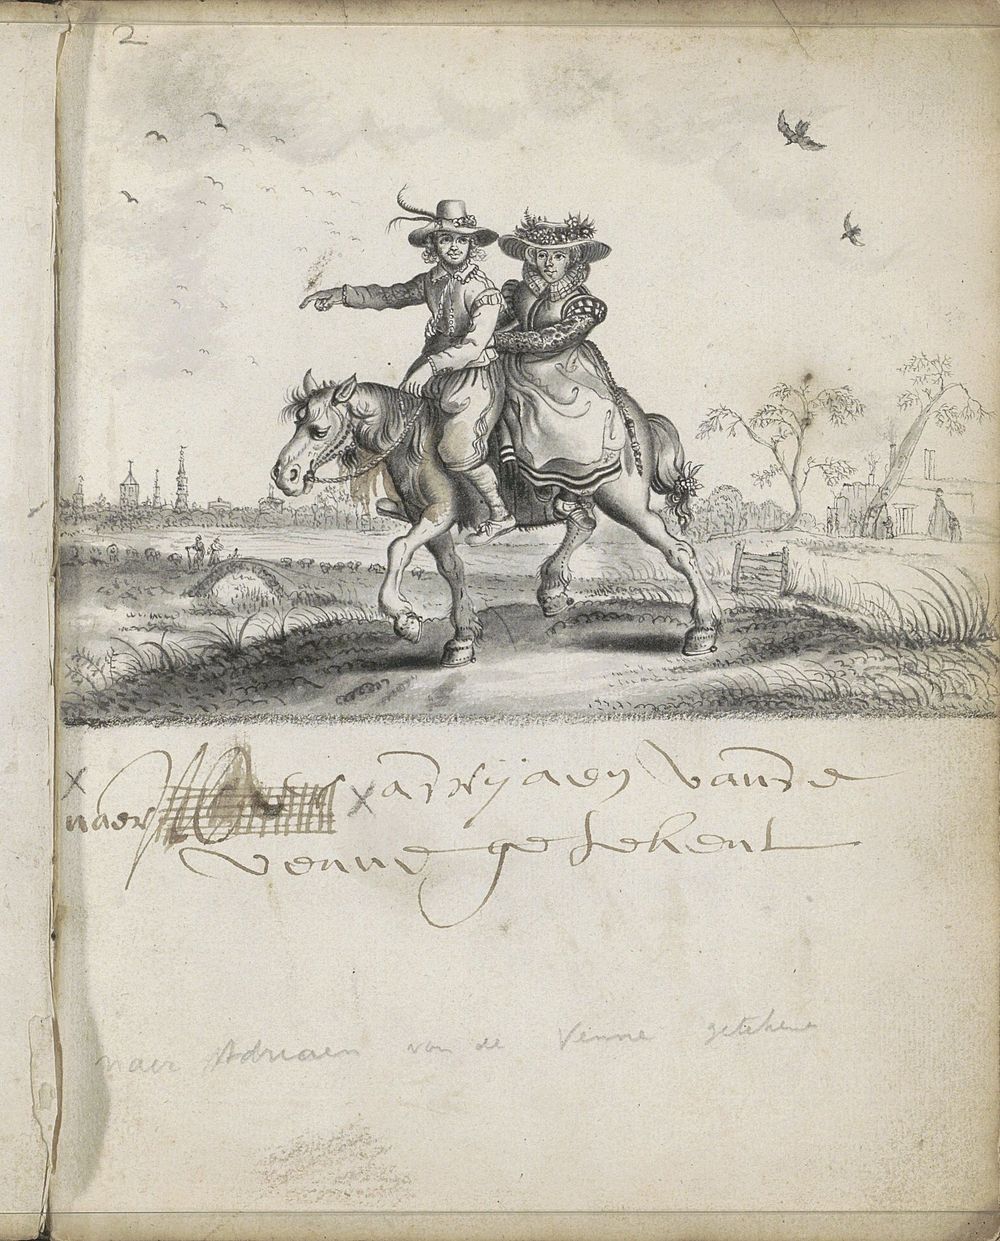 Landschap met man en vrouw te paard (1666) by Cornelis Saftleven and Adriaen Pietersz van de Venne